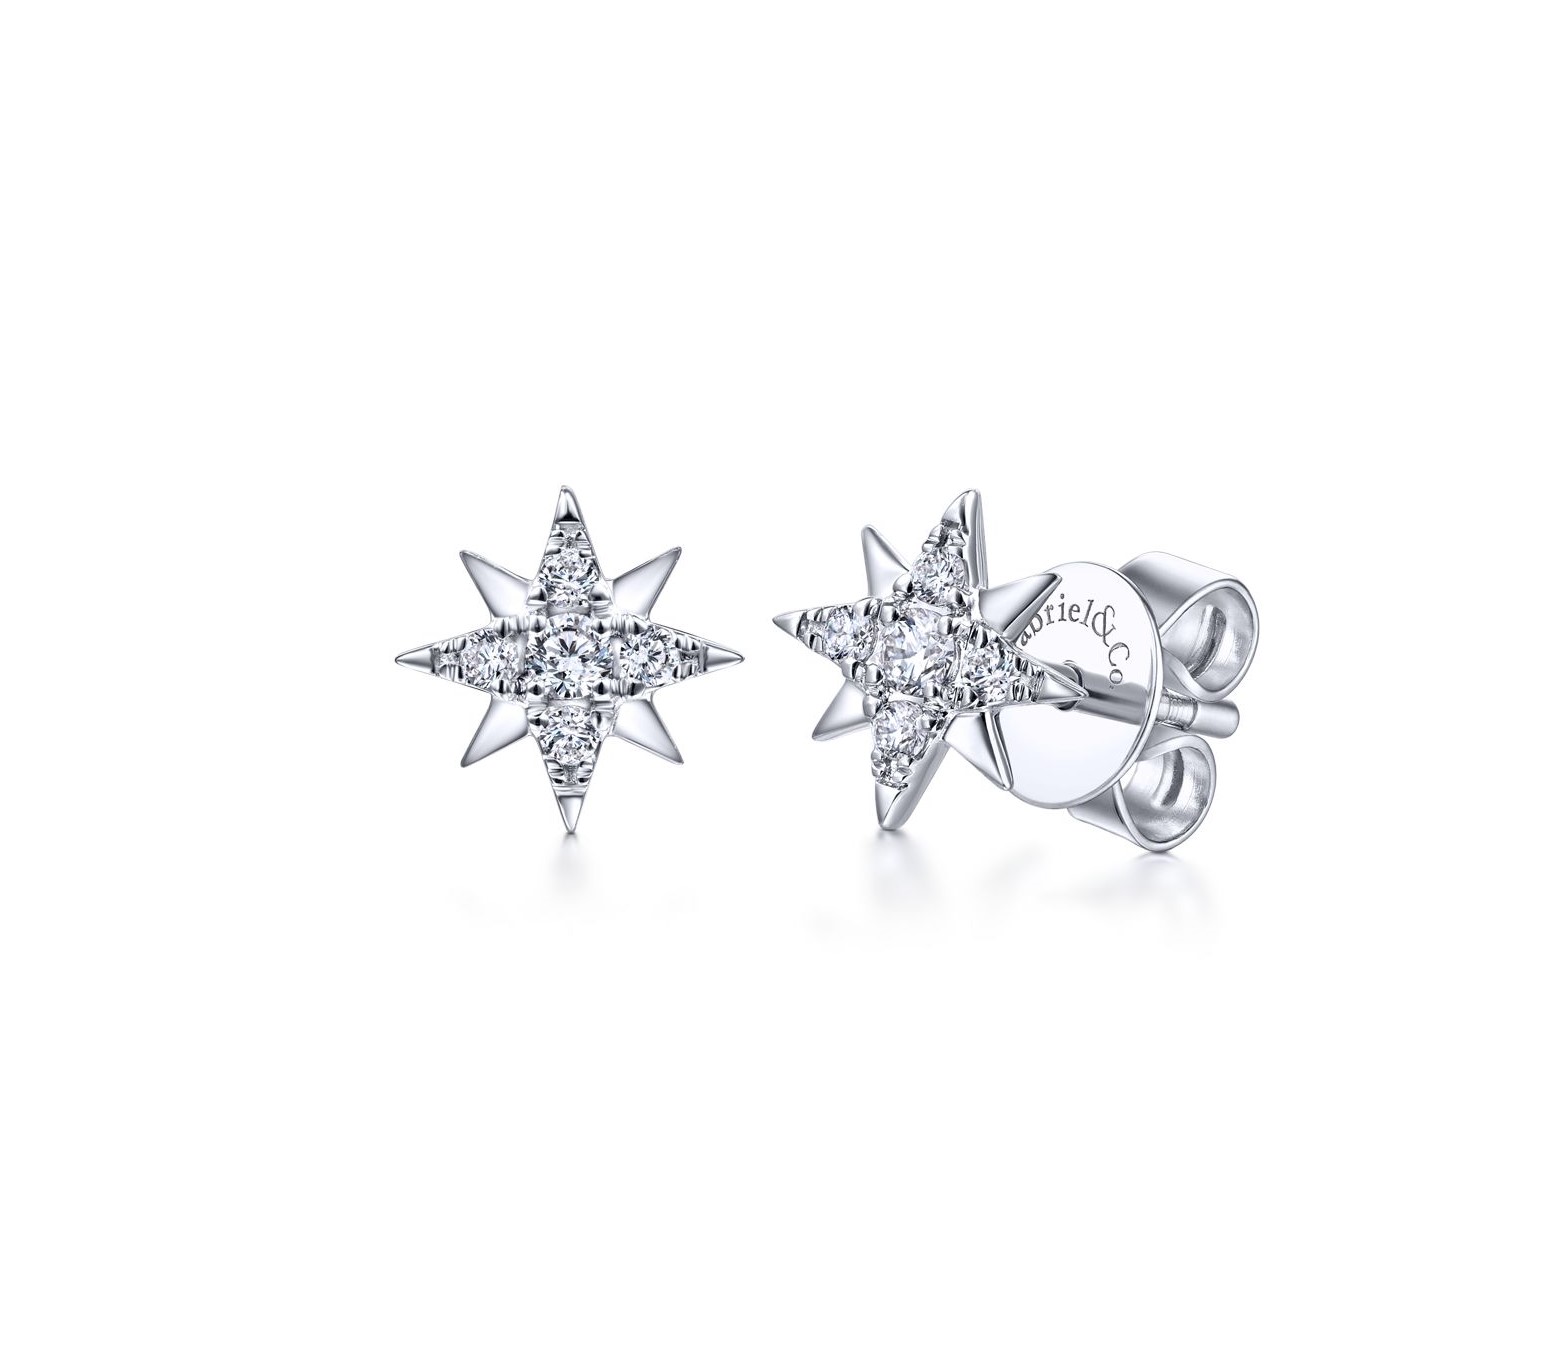 White gold diamond star earrings